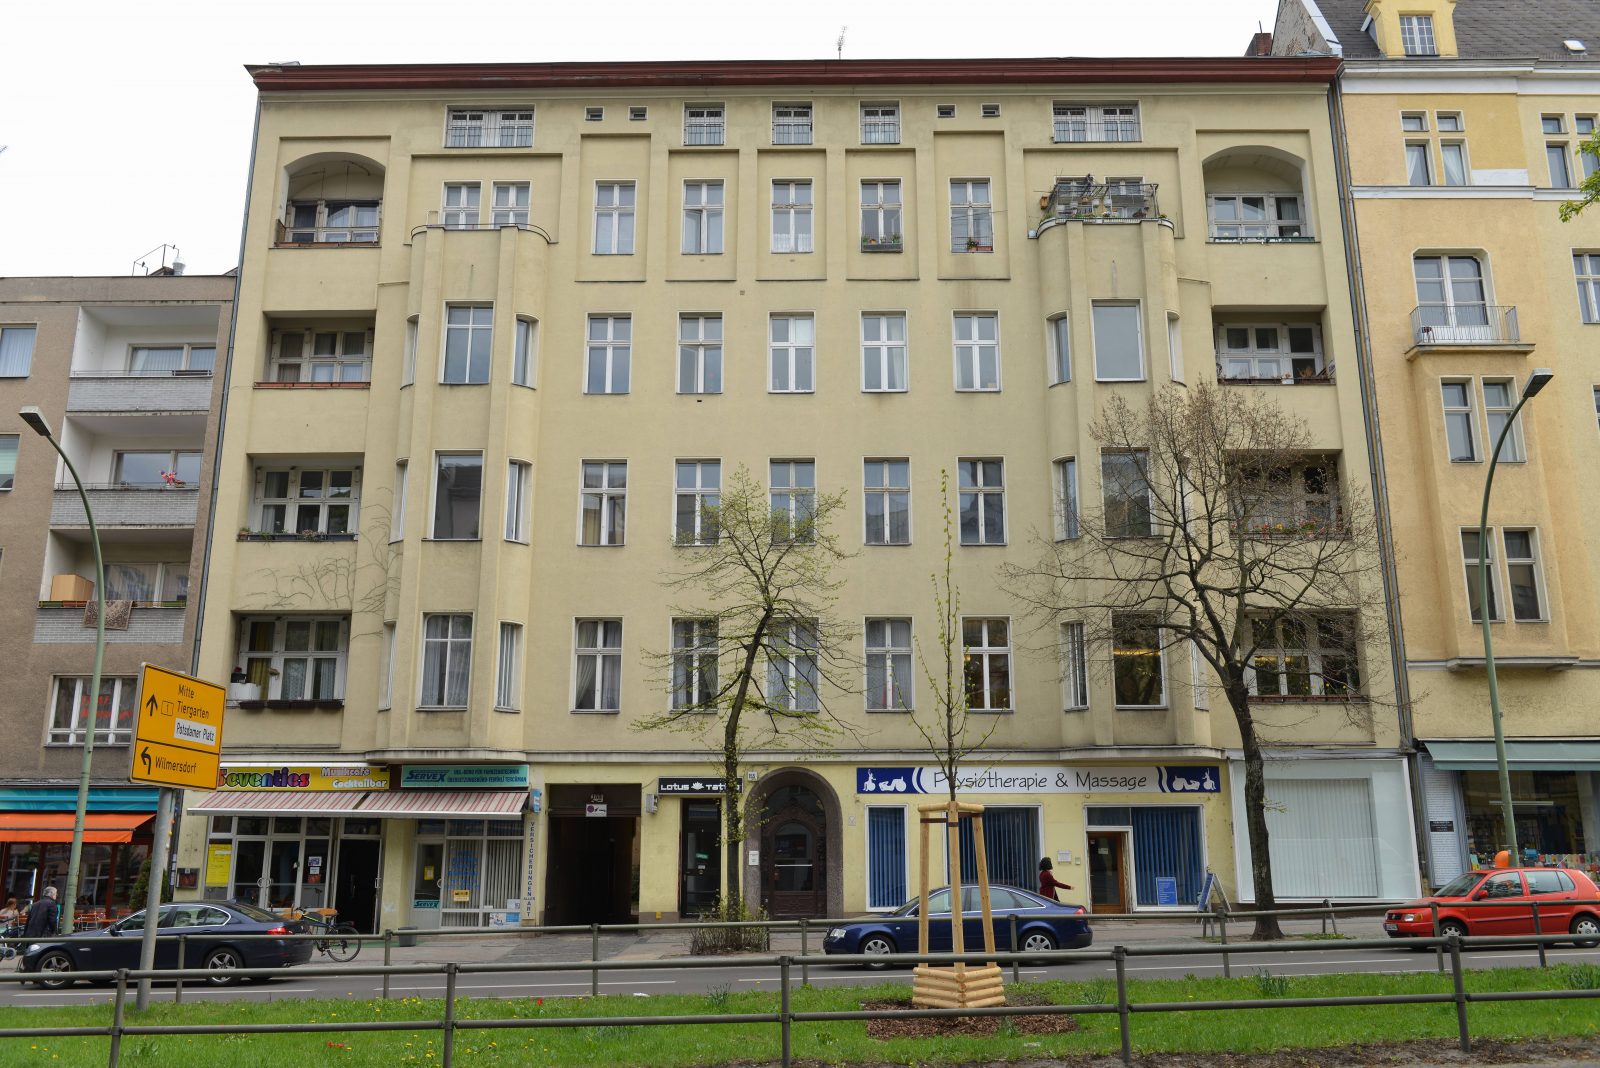 Wohnhaus von David Bowie, Hauptstrasse 155, Schöneberg. Foto: Imago/Joko